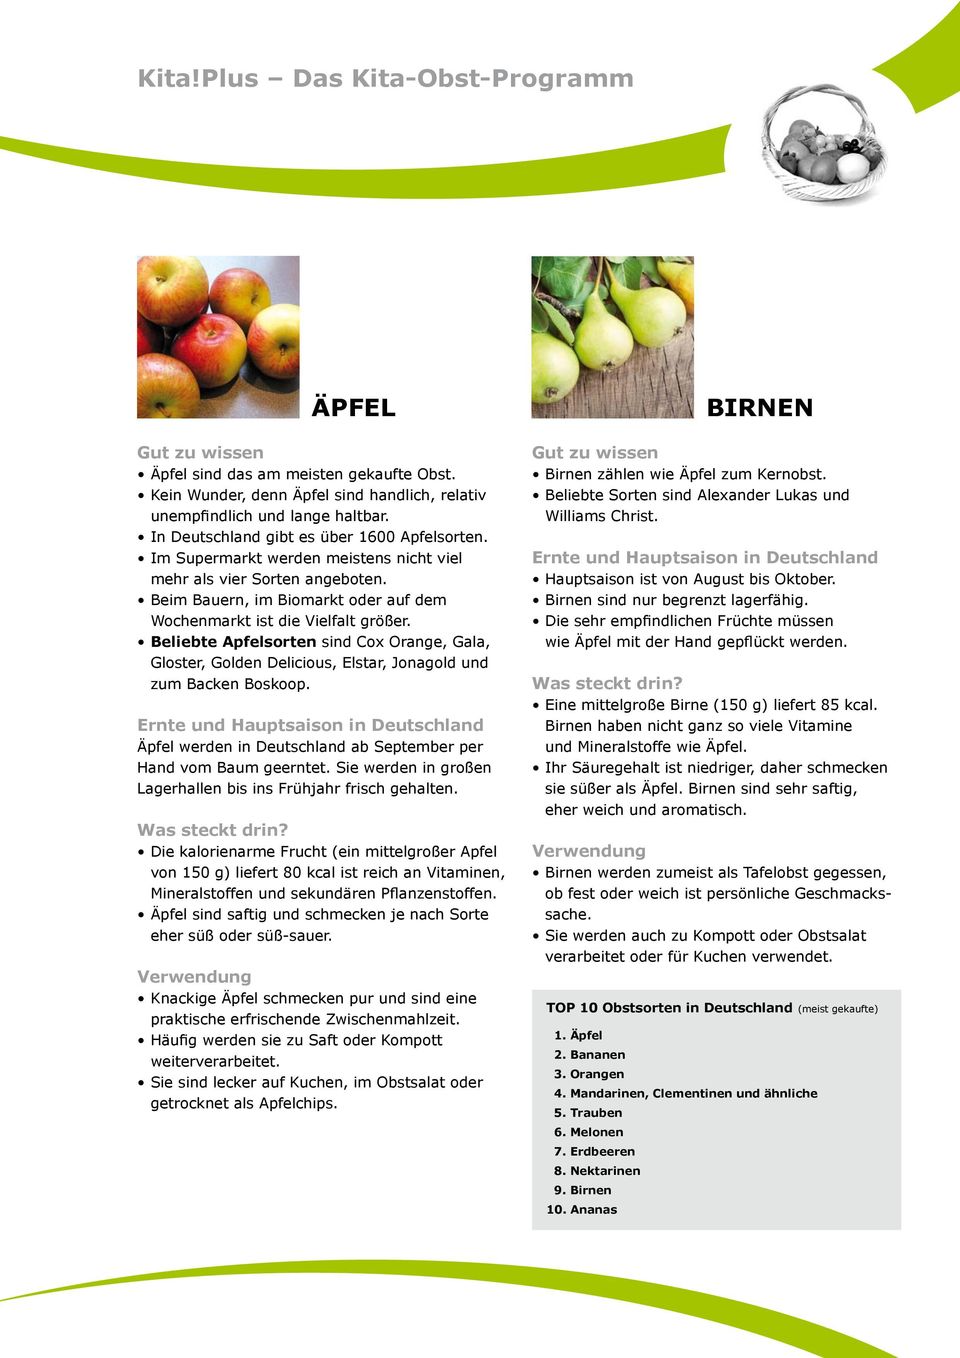 Beliebte Apfelsorten sind Cox Orange, Gala, Gloster, Golden Delicious, Elstar, Jonagold und zum Backen Boskoop. Äpfel werden in Deutschland ab September per Hand vom Baum geerntet.